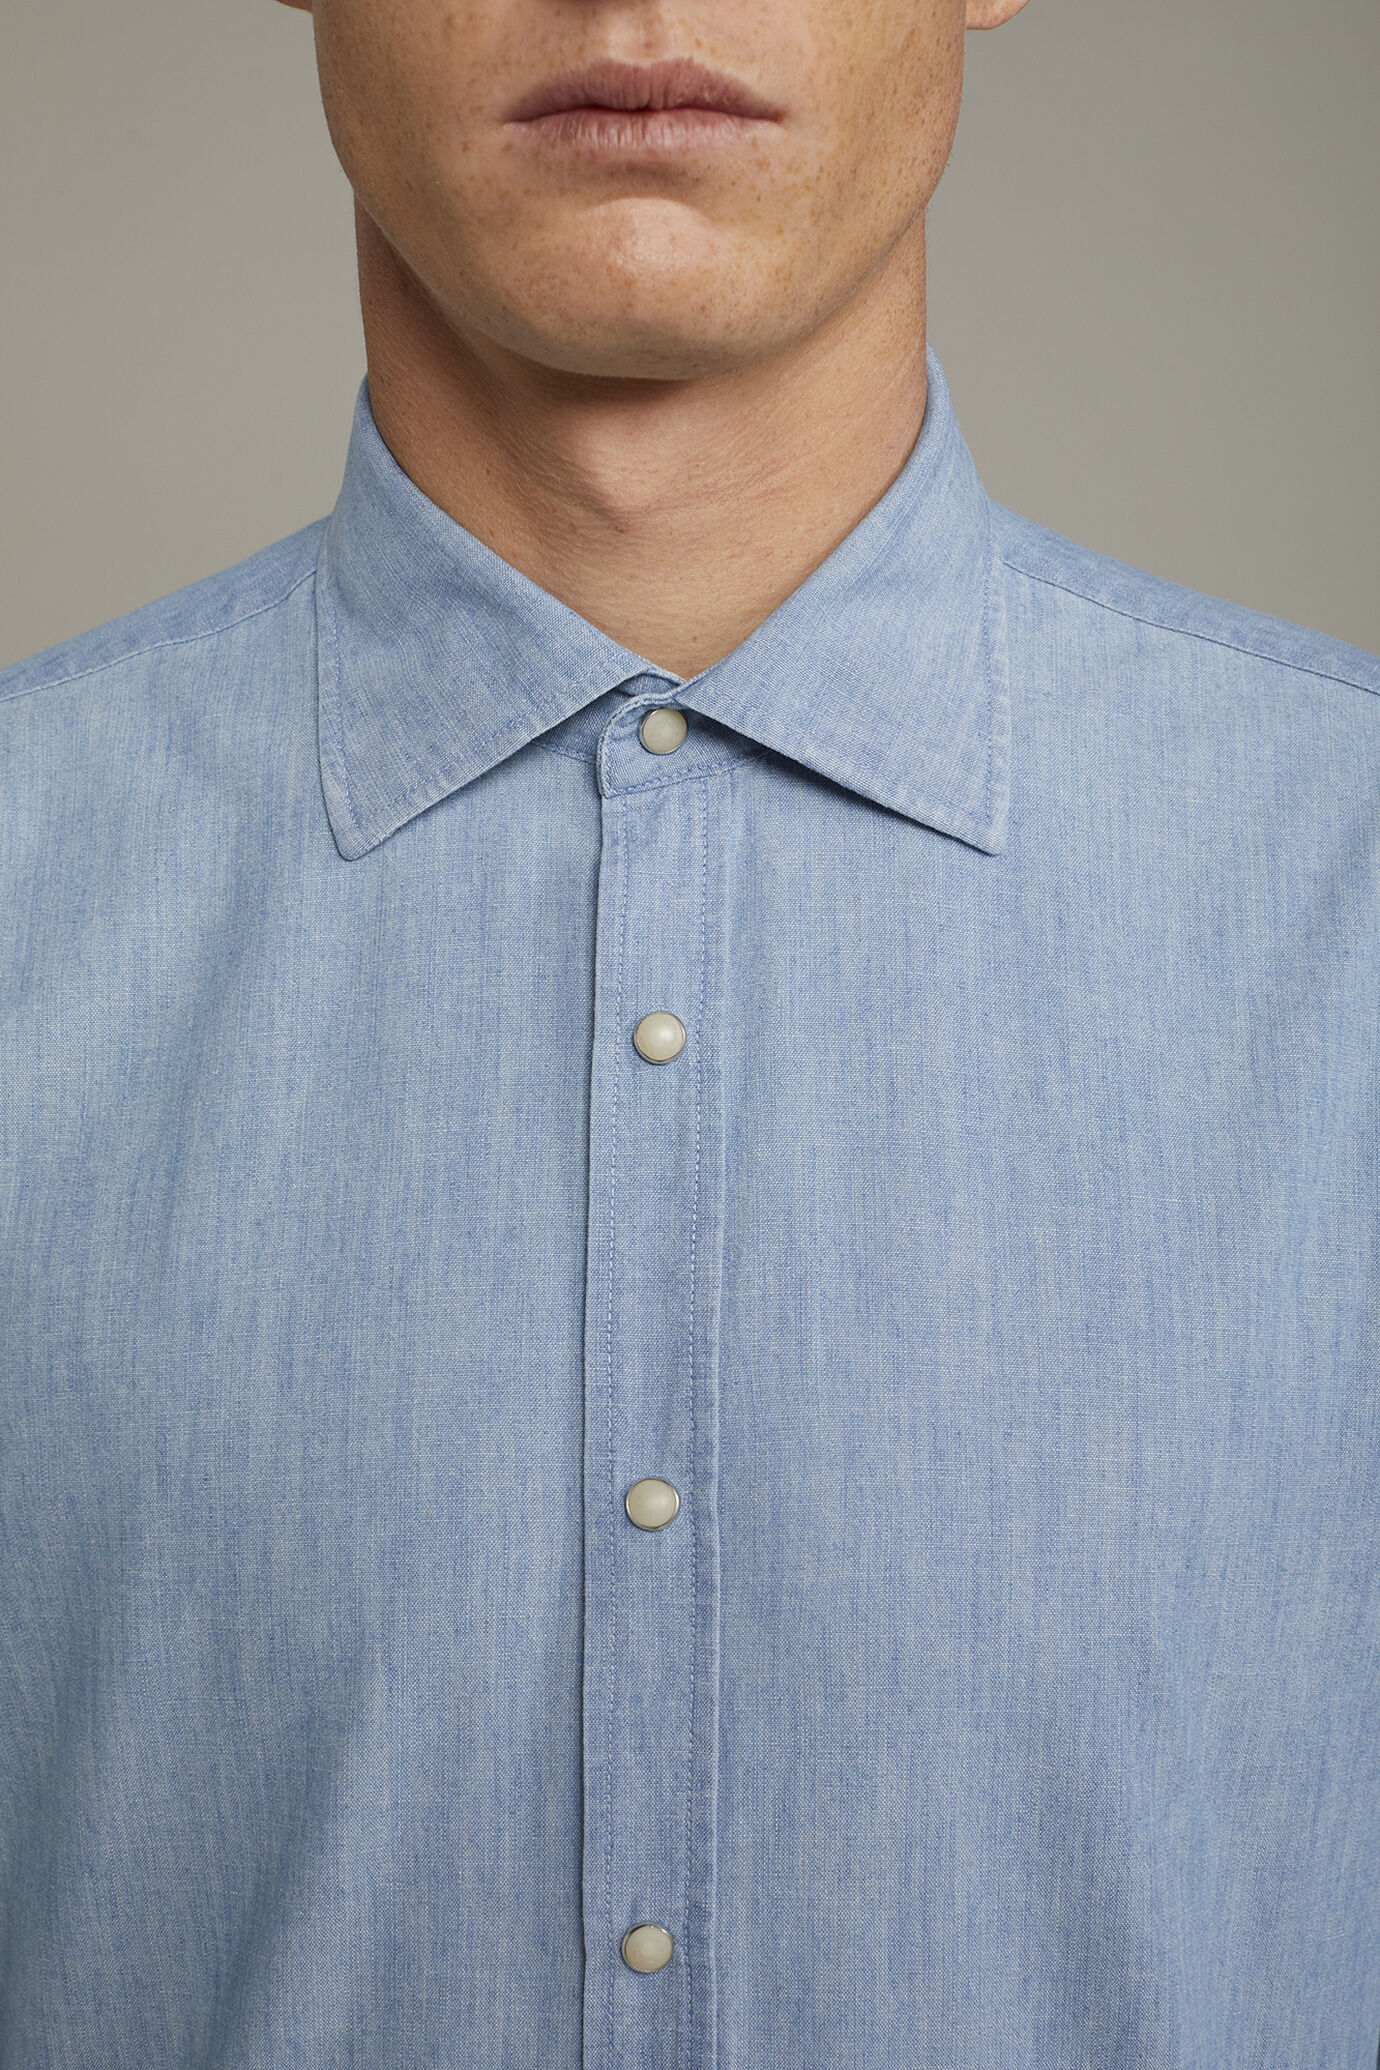 Camicia casual uomo collo classico 100% cotone tessuto chambray denim chiaro comfort fit image number 3